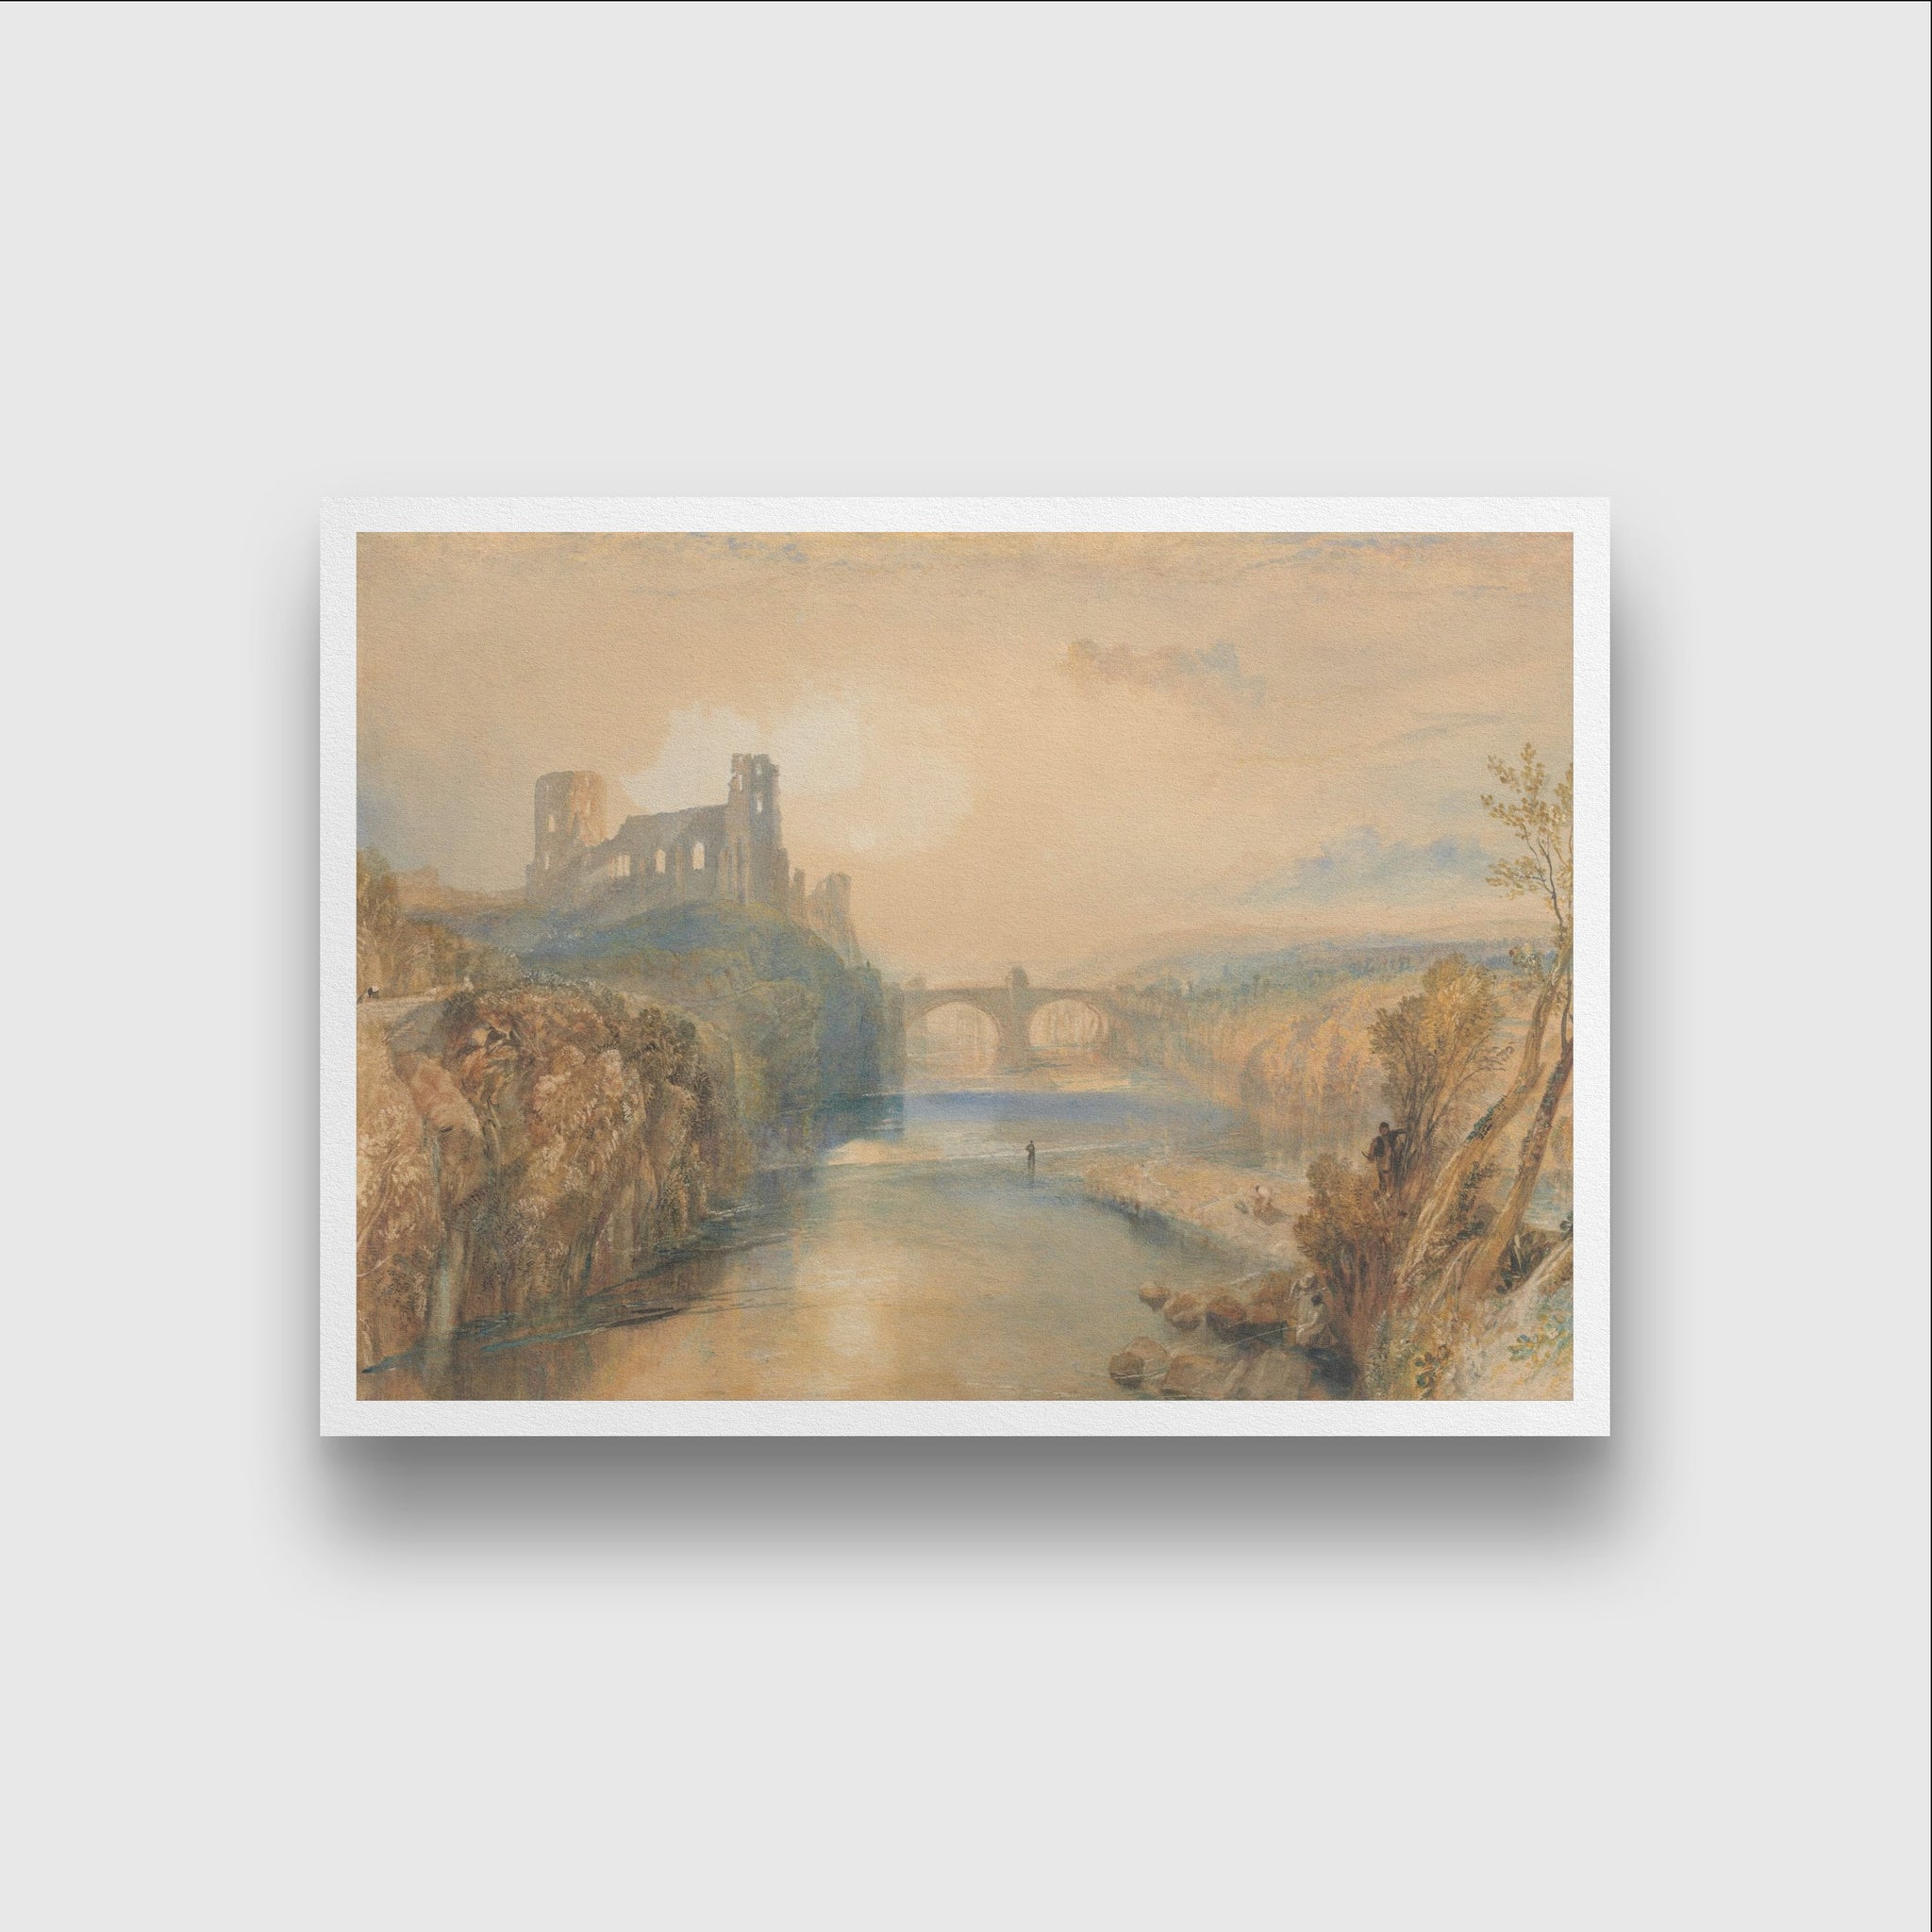 Barnard Castle Painting - Meri Deewar - MeriDeewar